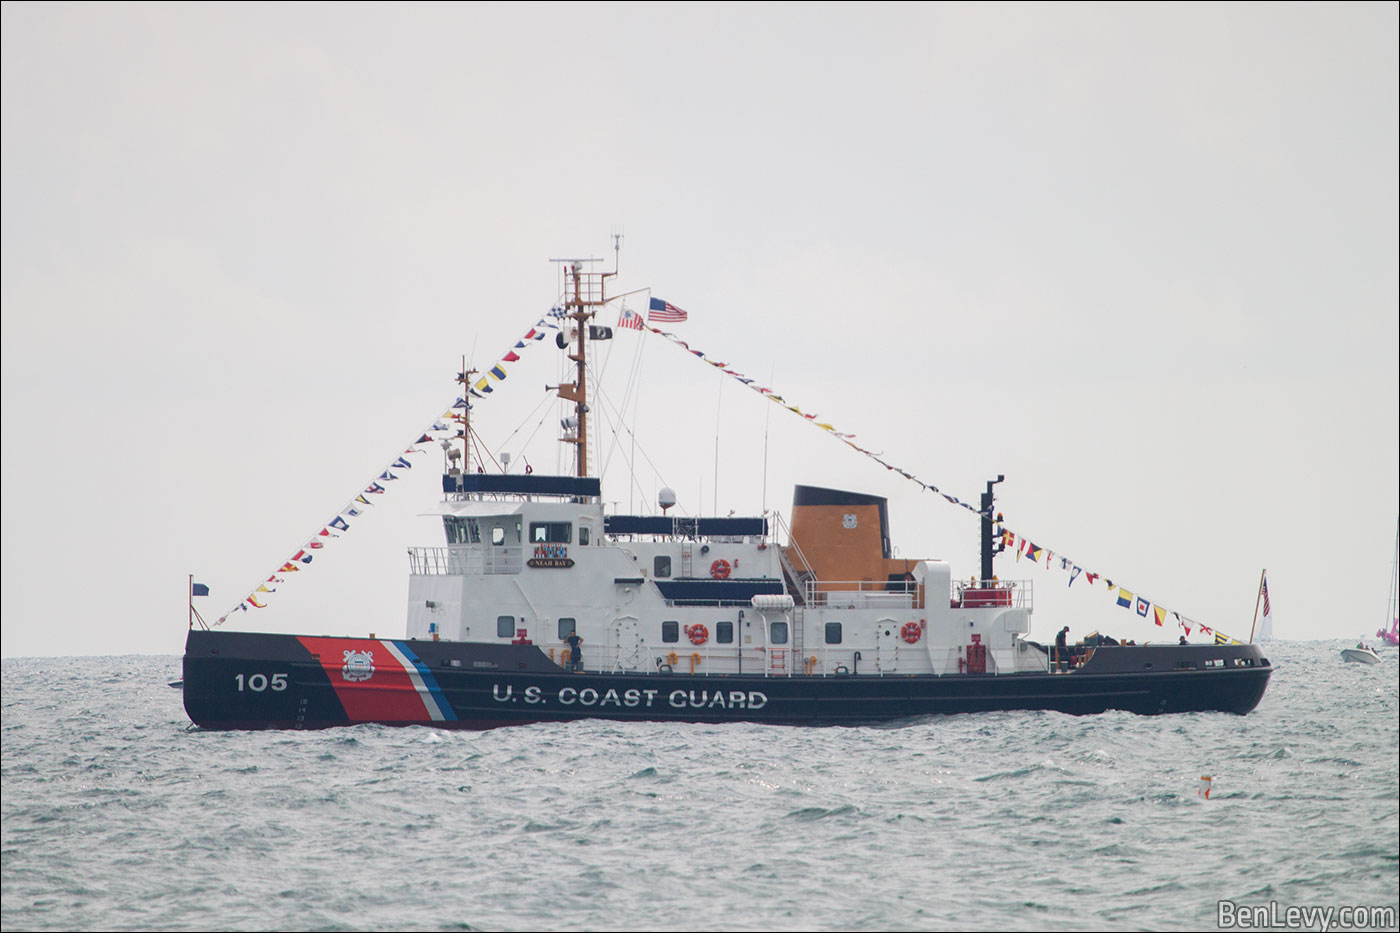 Coast Guard boat in Chicago